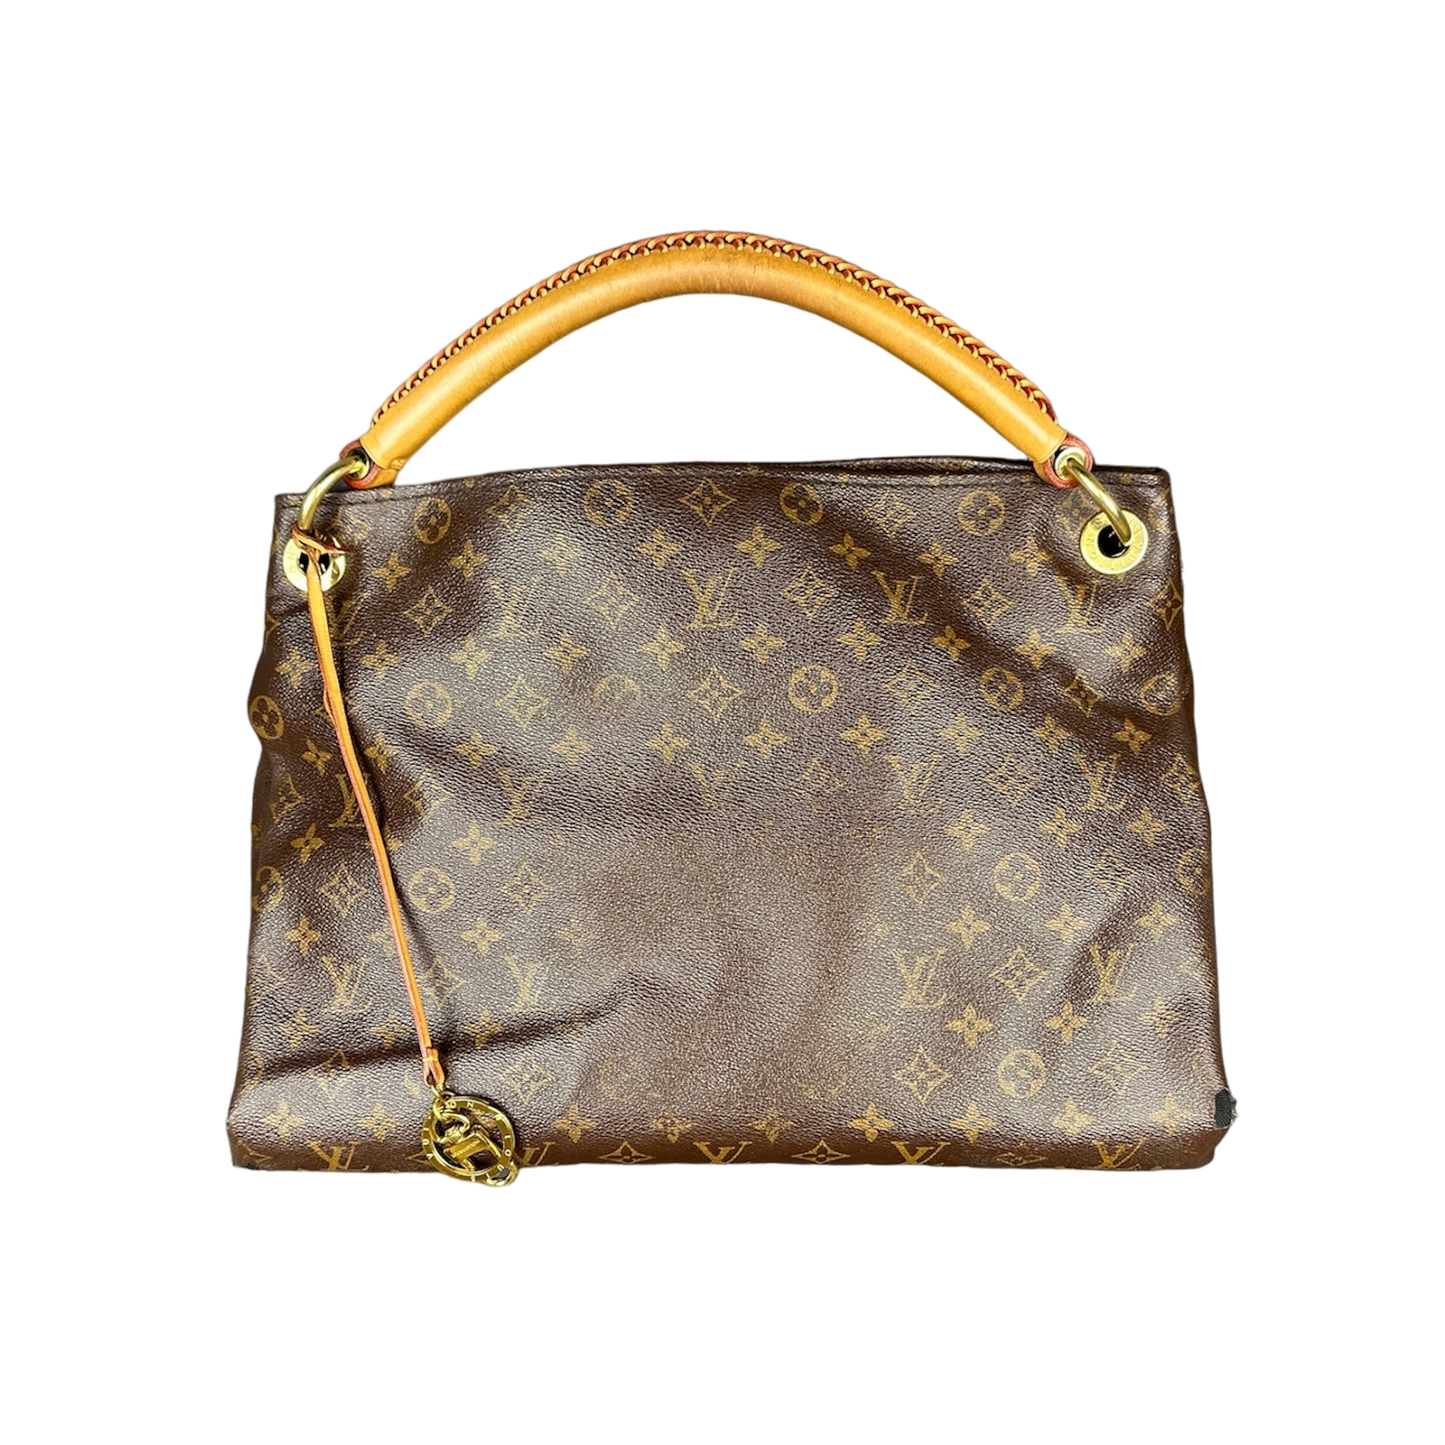 Vintage Louis Vuitton Artsy Handtasche braun